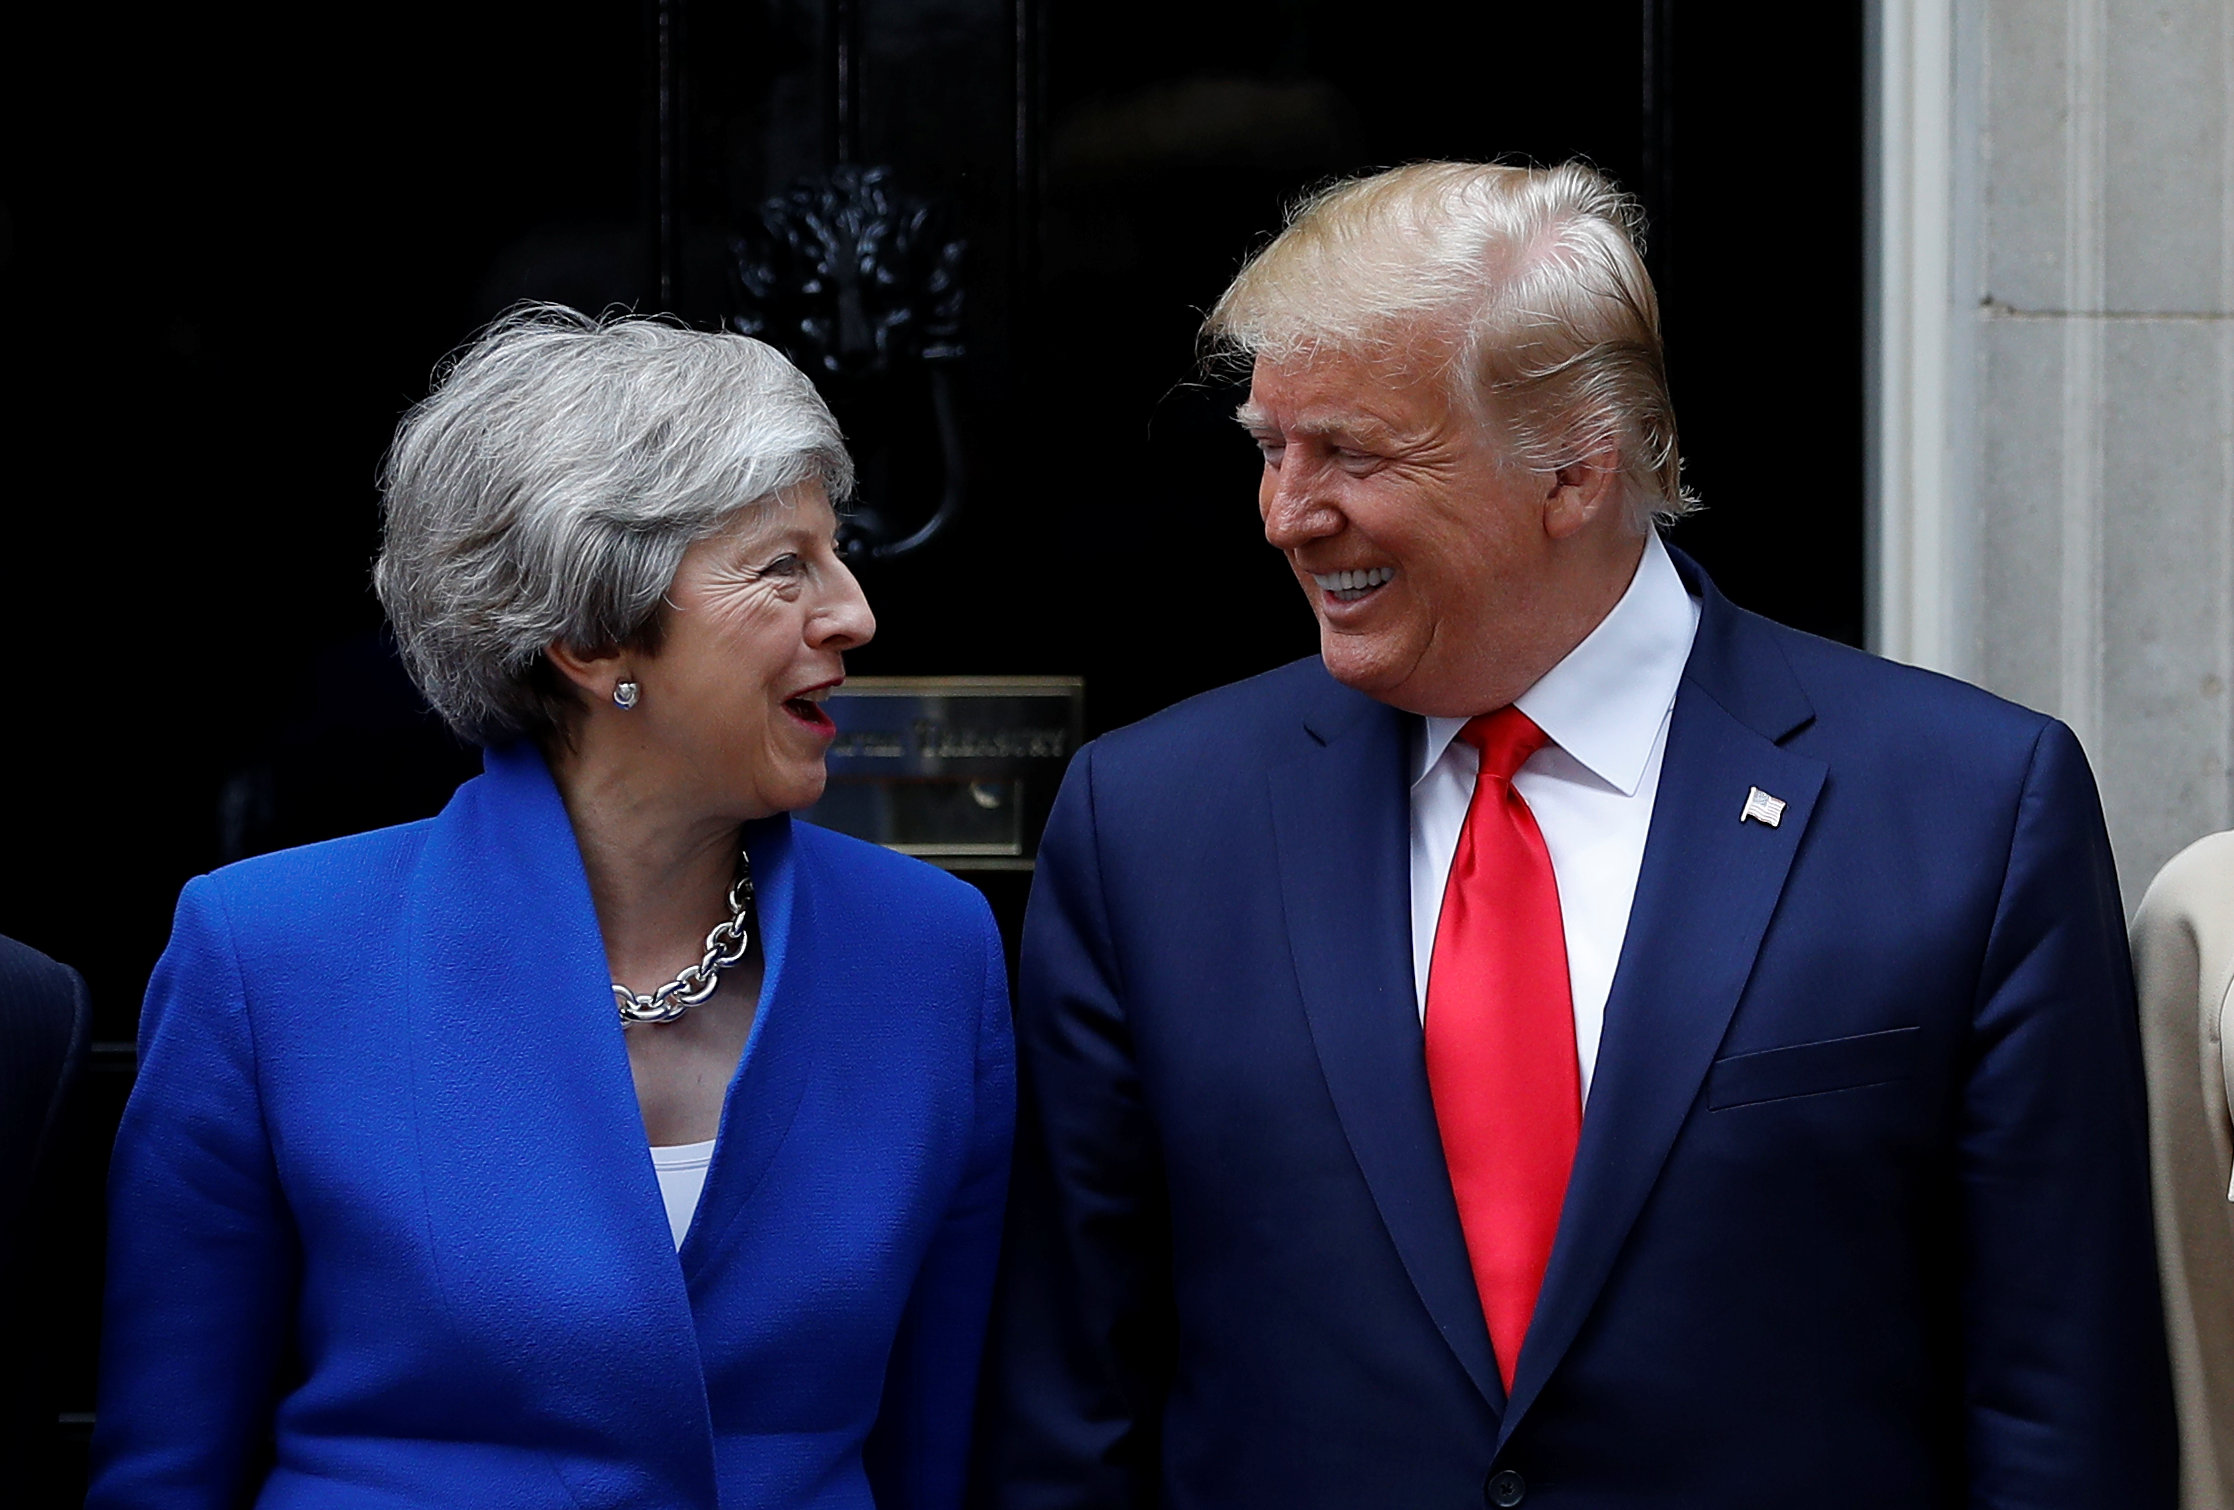 Donald Trump quiere un acuerdo comercial sustancial con Reino Unido tras el Brexit (Fotos)